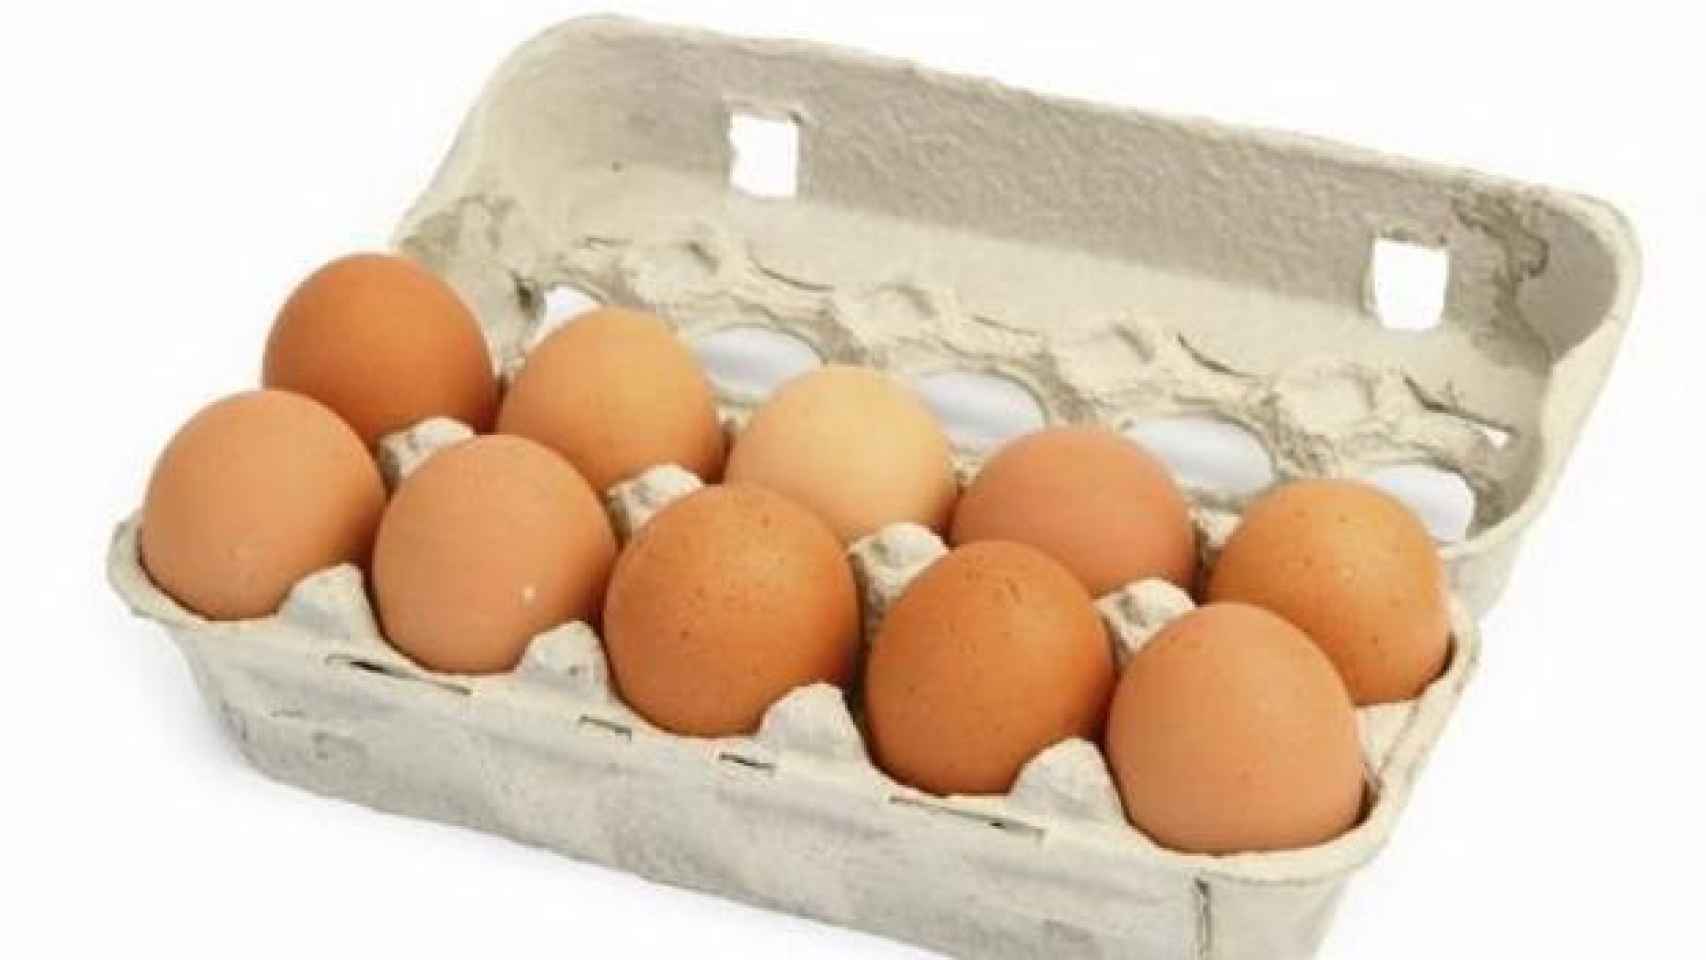 Una docena de huevos como los que podemos encontrar en el supermercado.